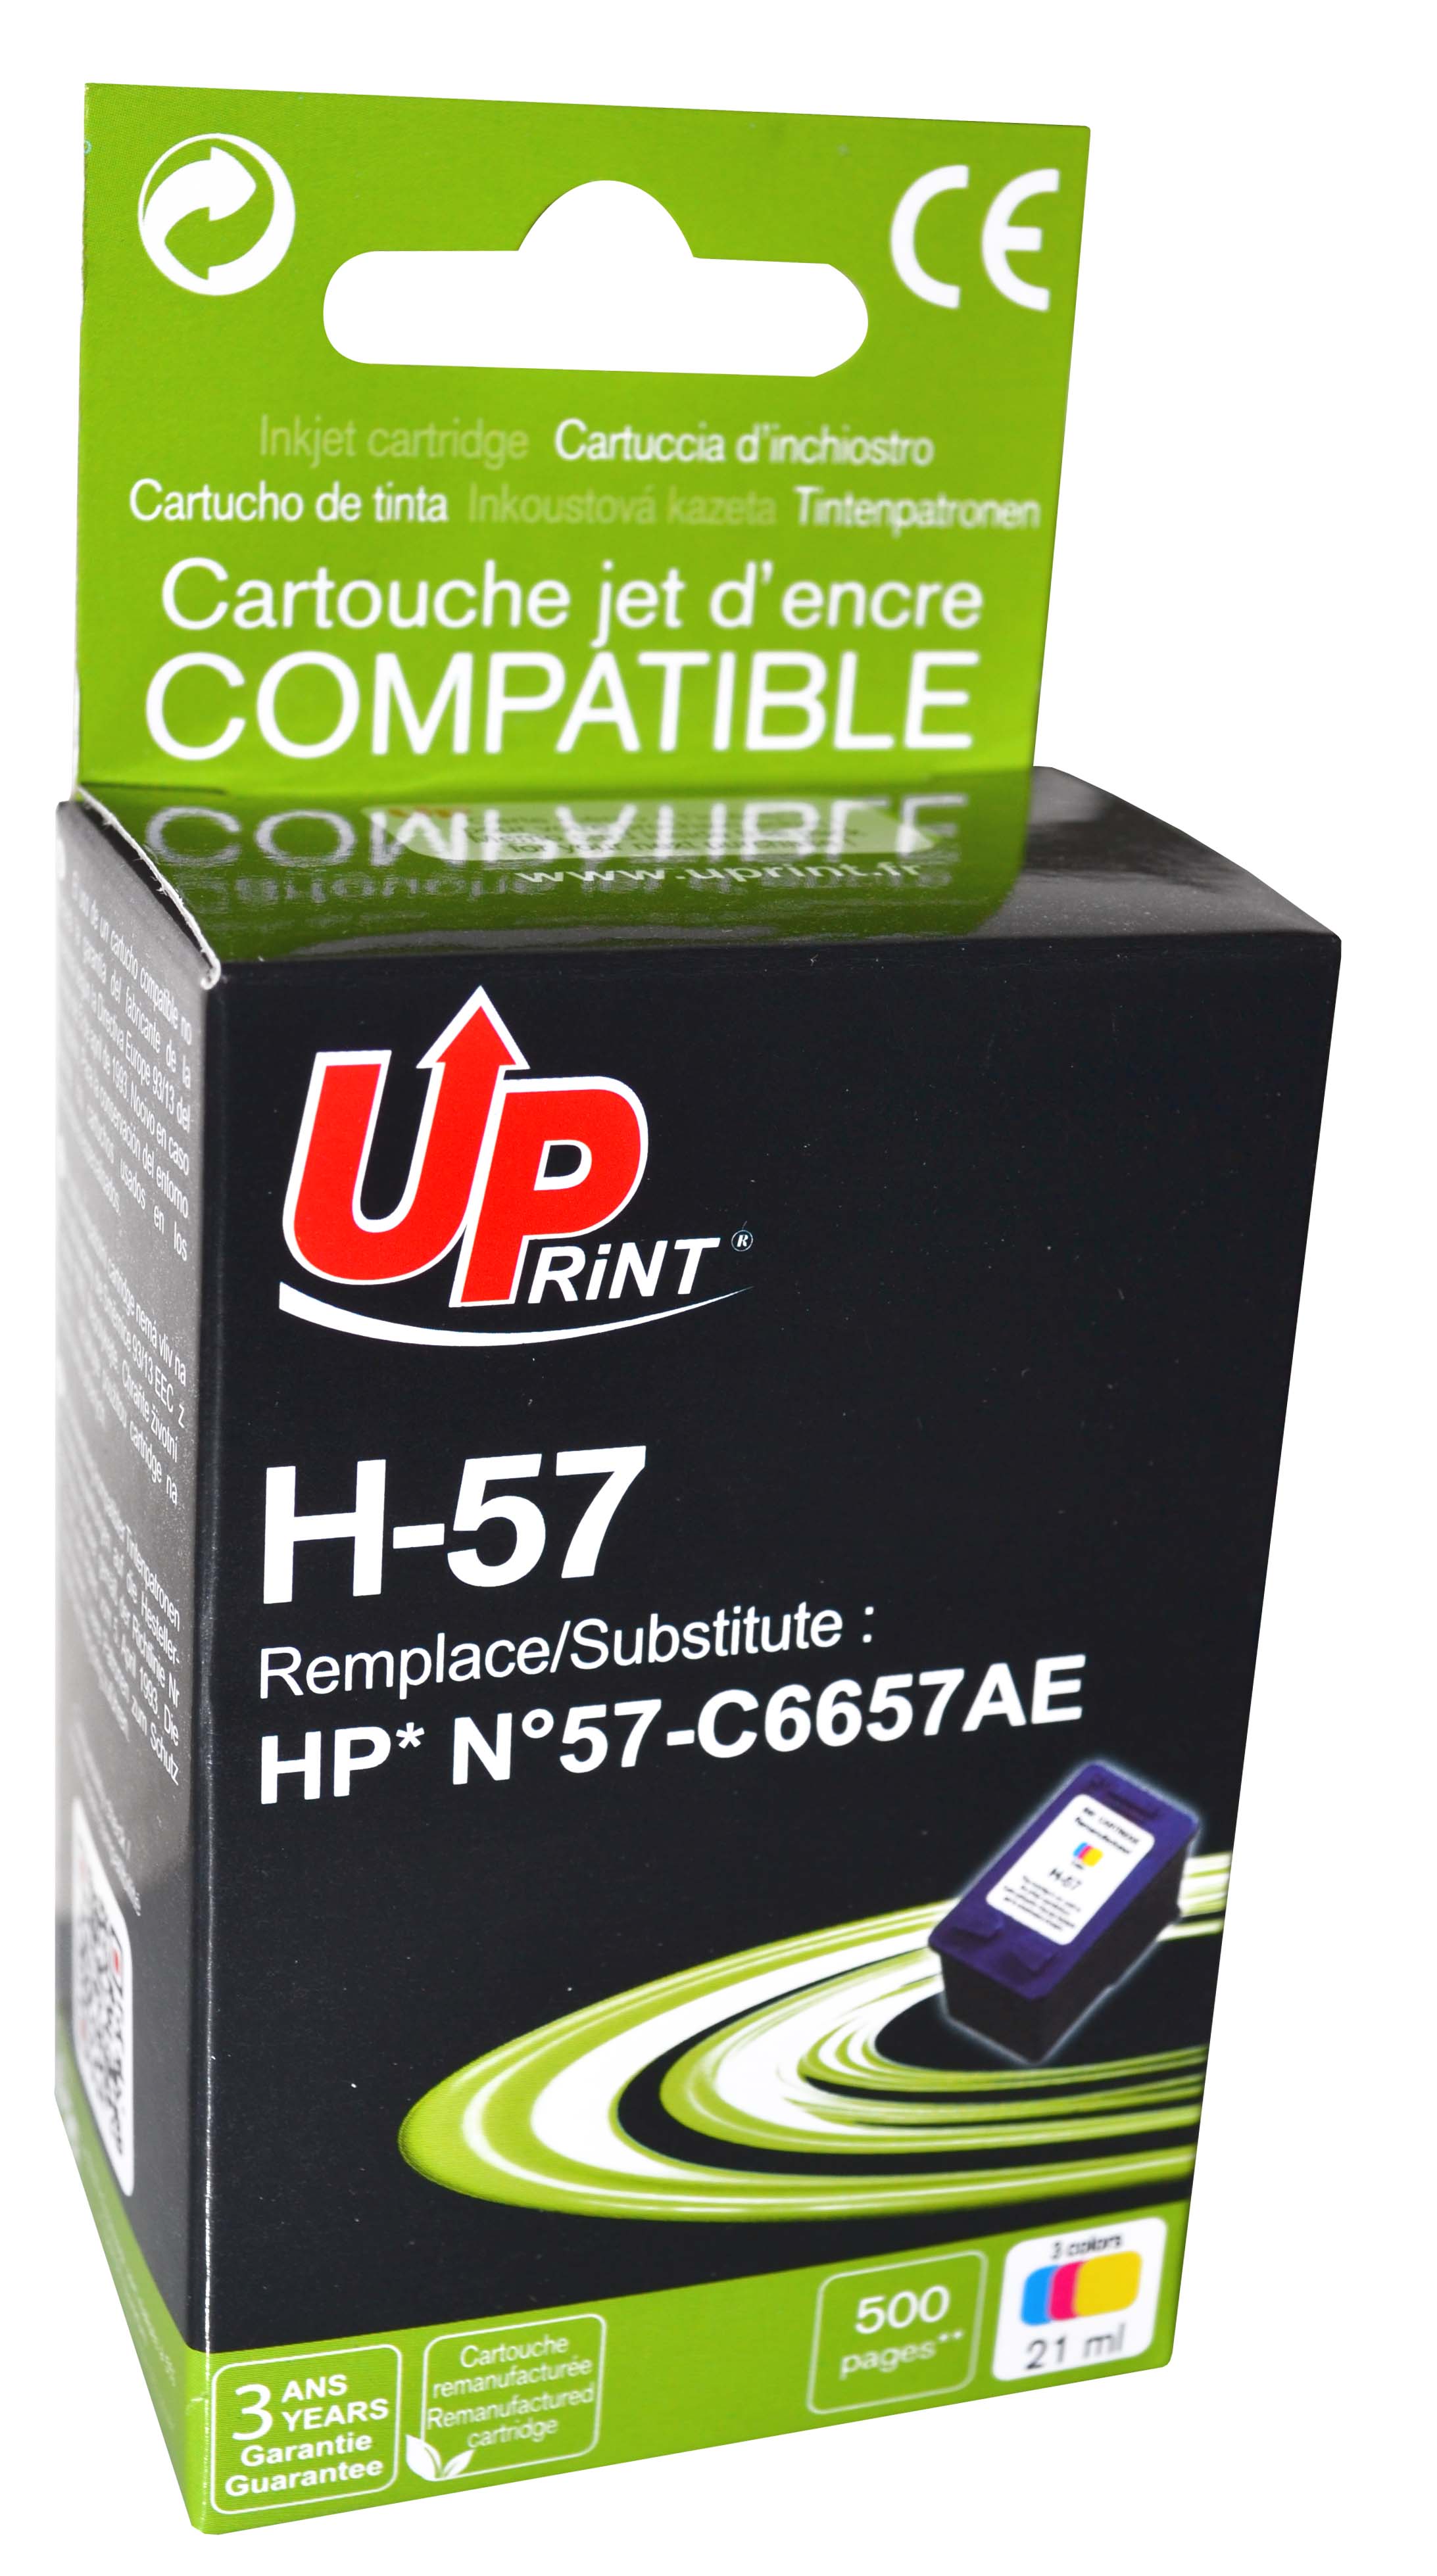 Cartouche encre UPrint compatible HP 57 couleur